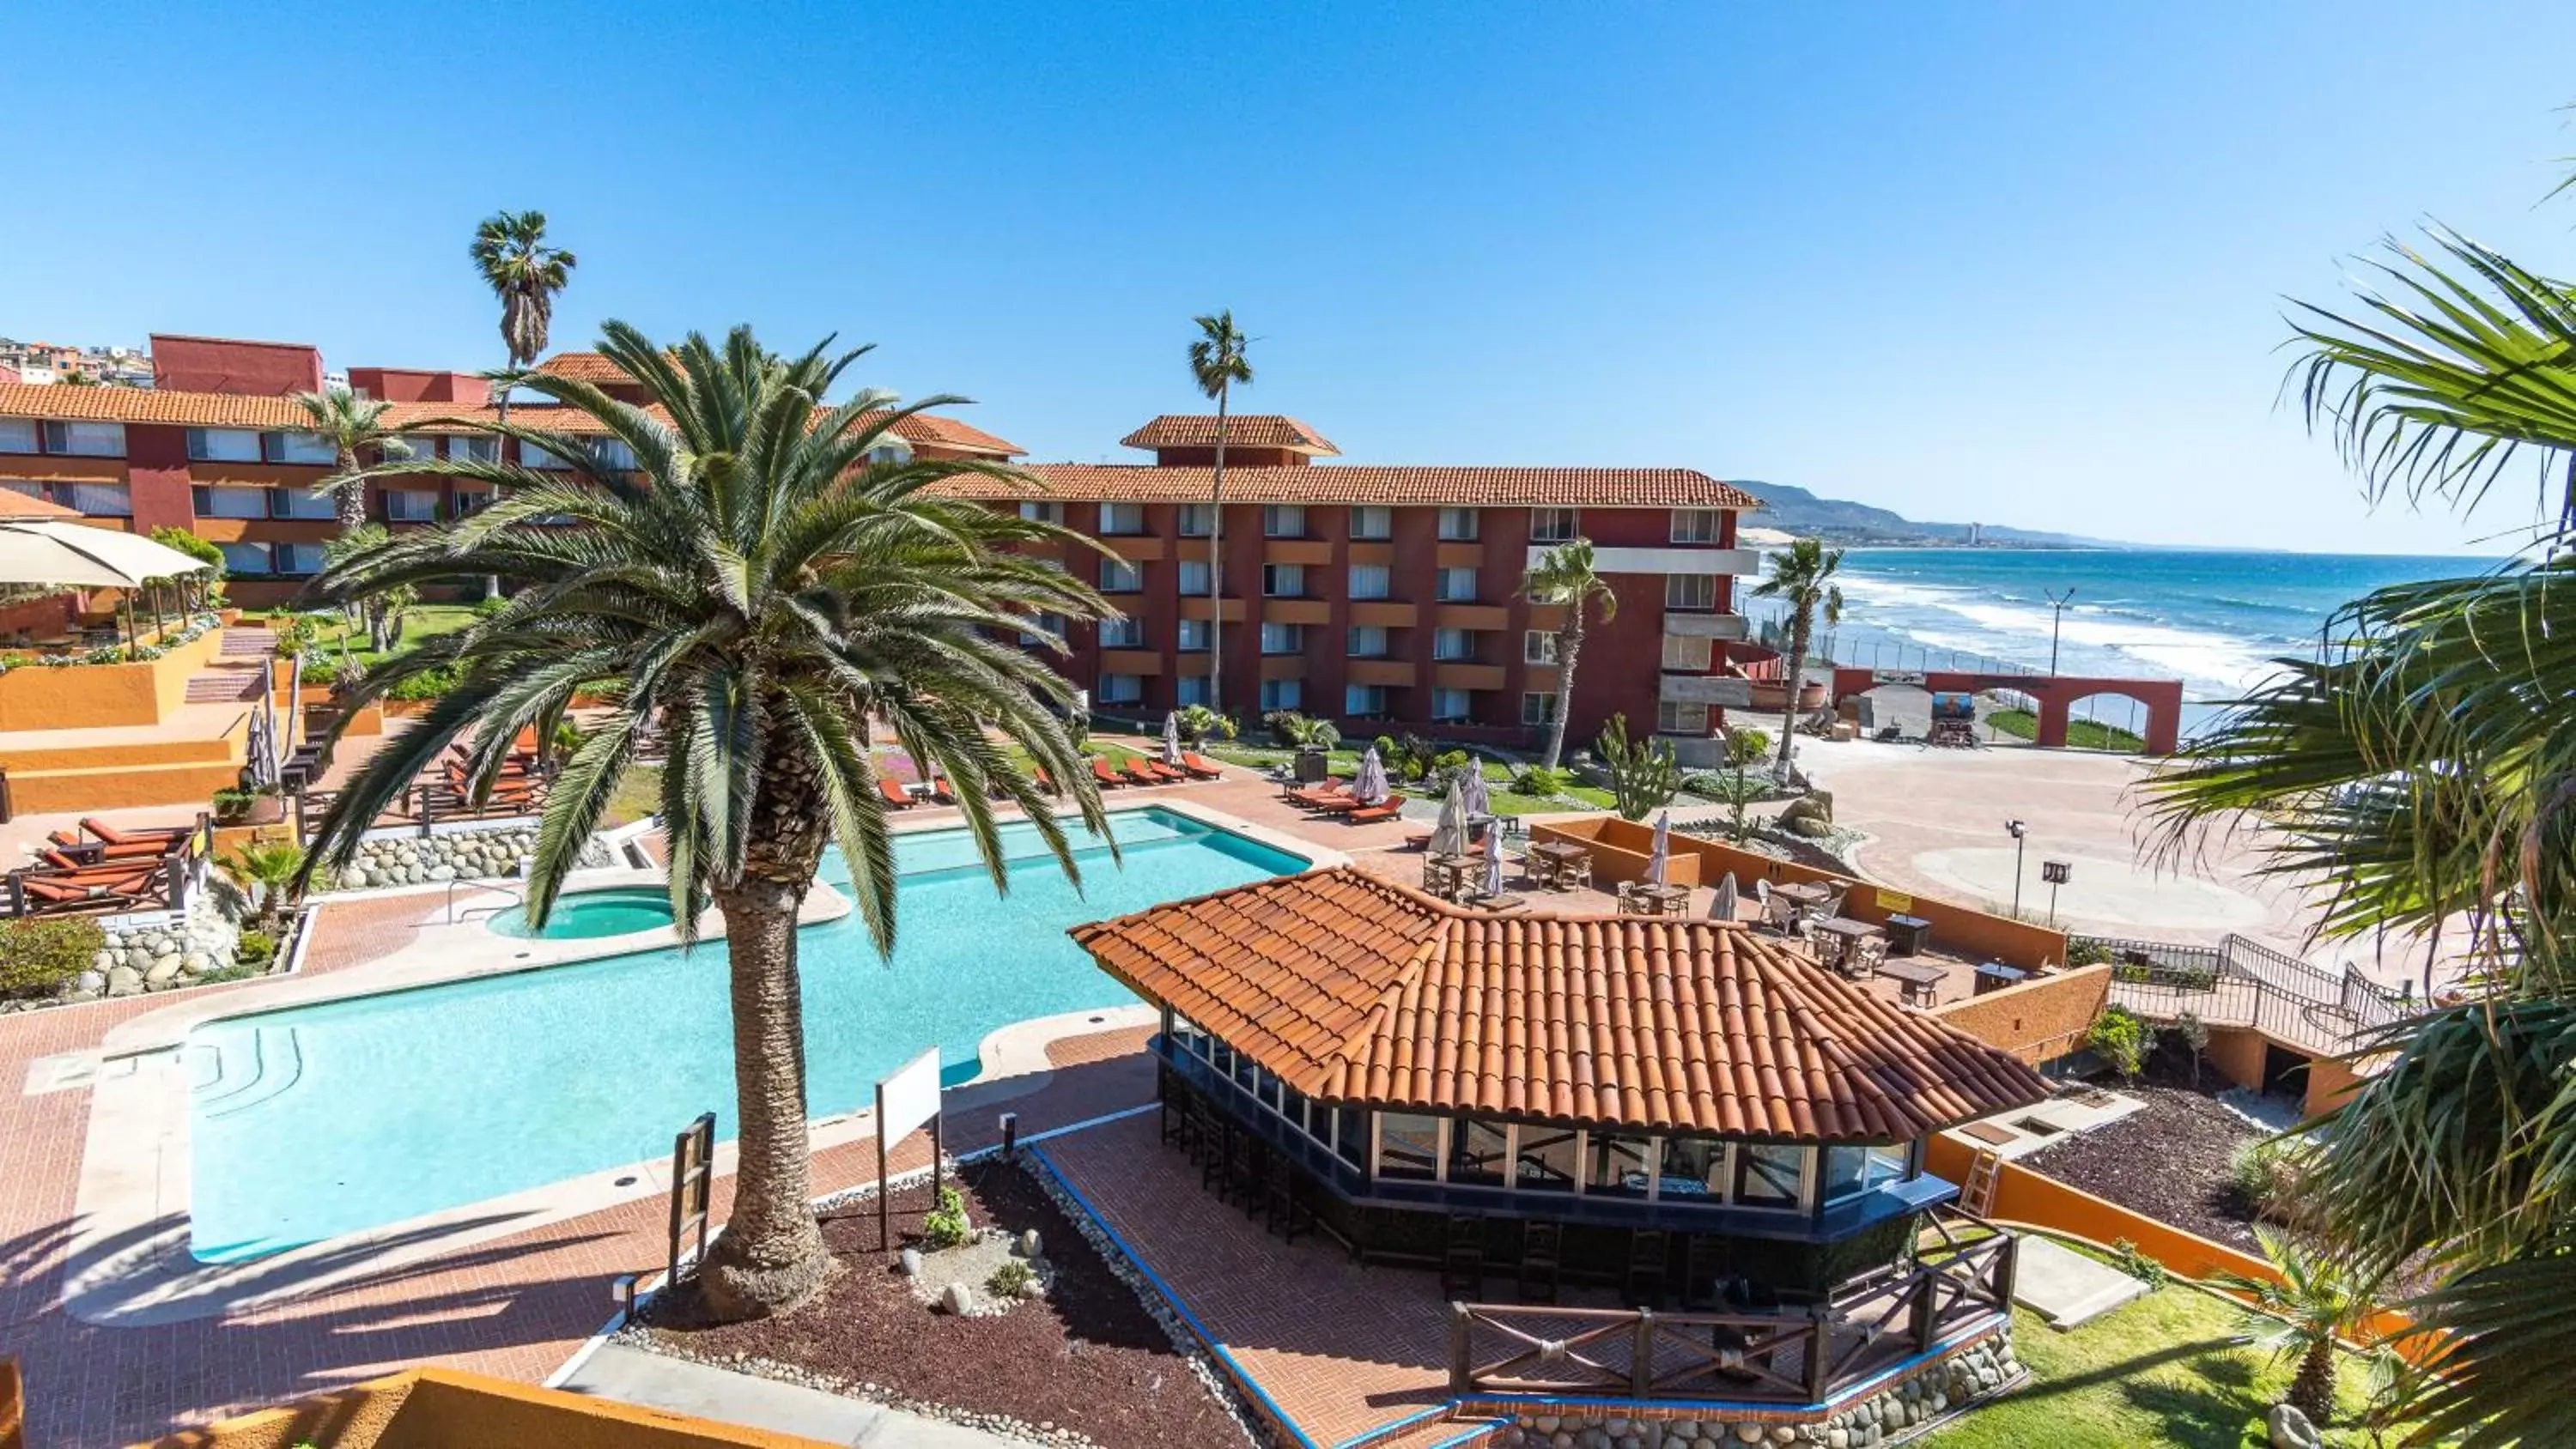 Natural landscape, Pool View in Puerto Nuevo Baja Hotel & Villas